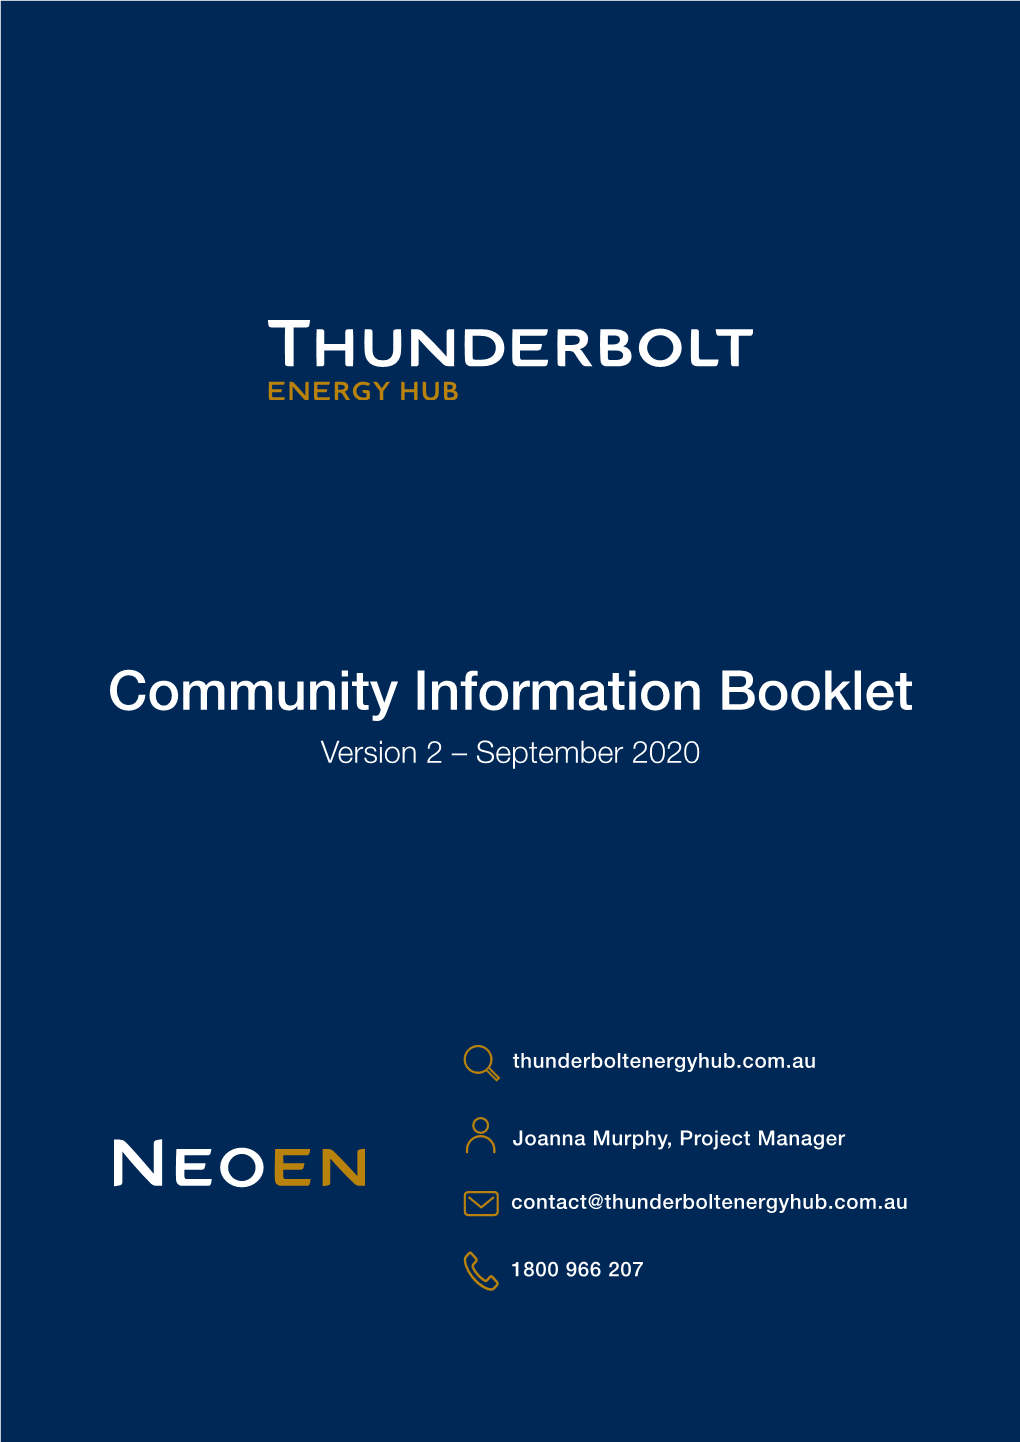 Community Information Booklet Version 2 – September 2020